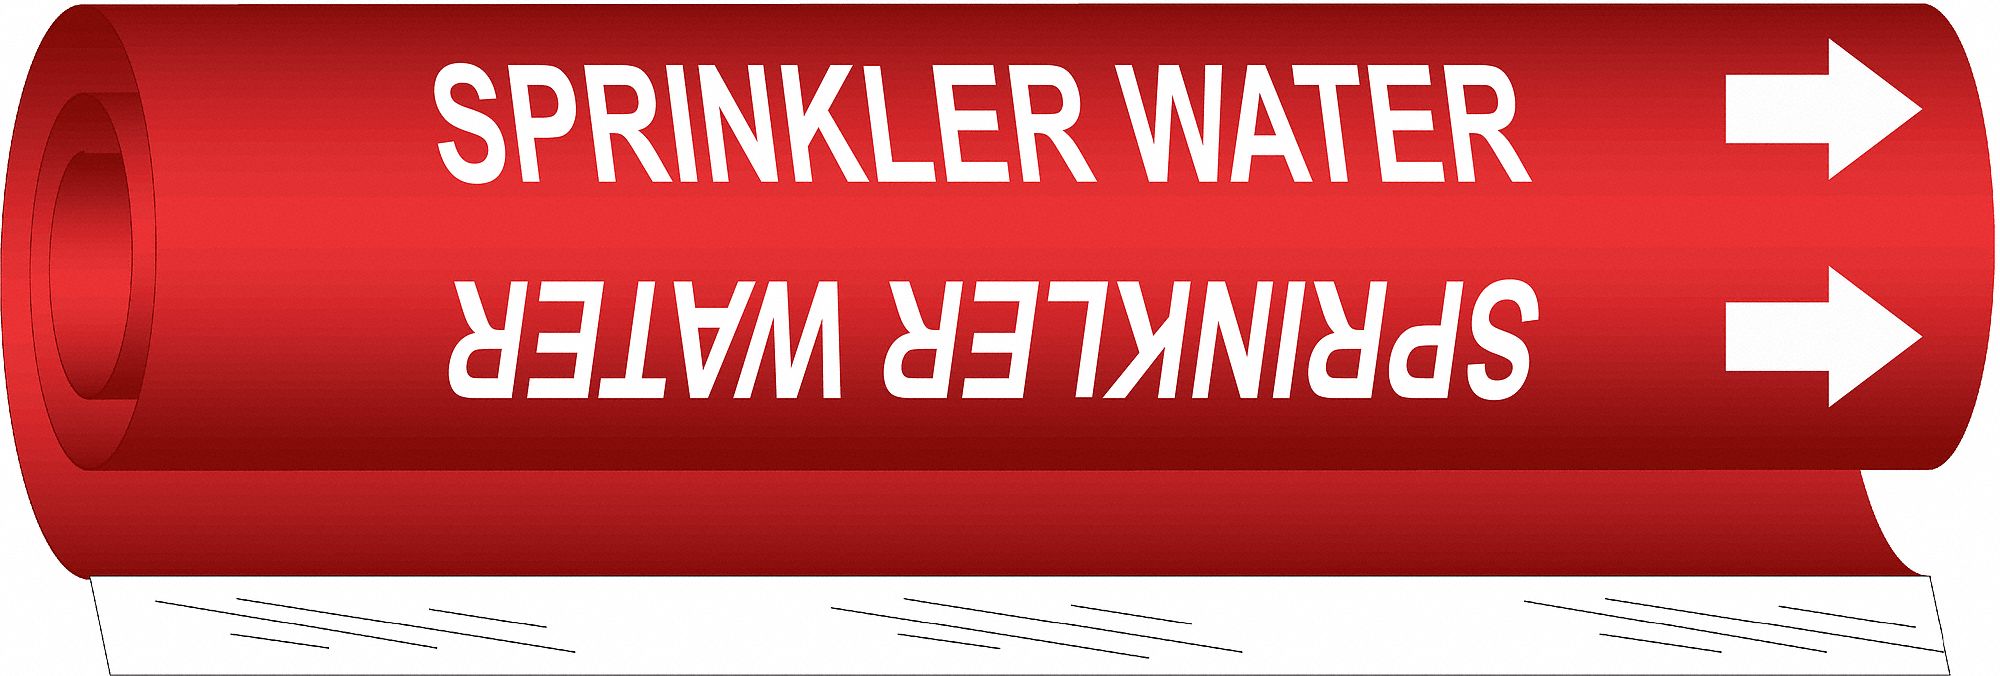 Pipe Mrkr,Sprinkler Water,1-1/2to2-3/8In